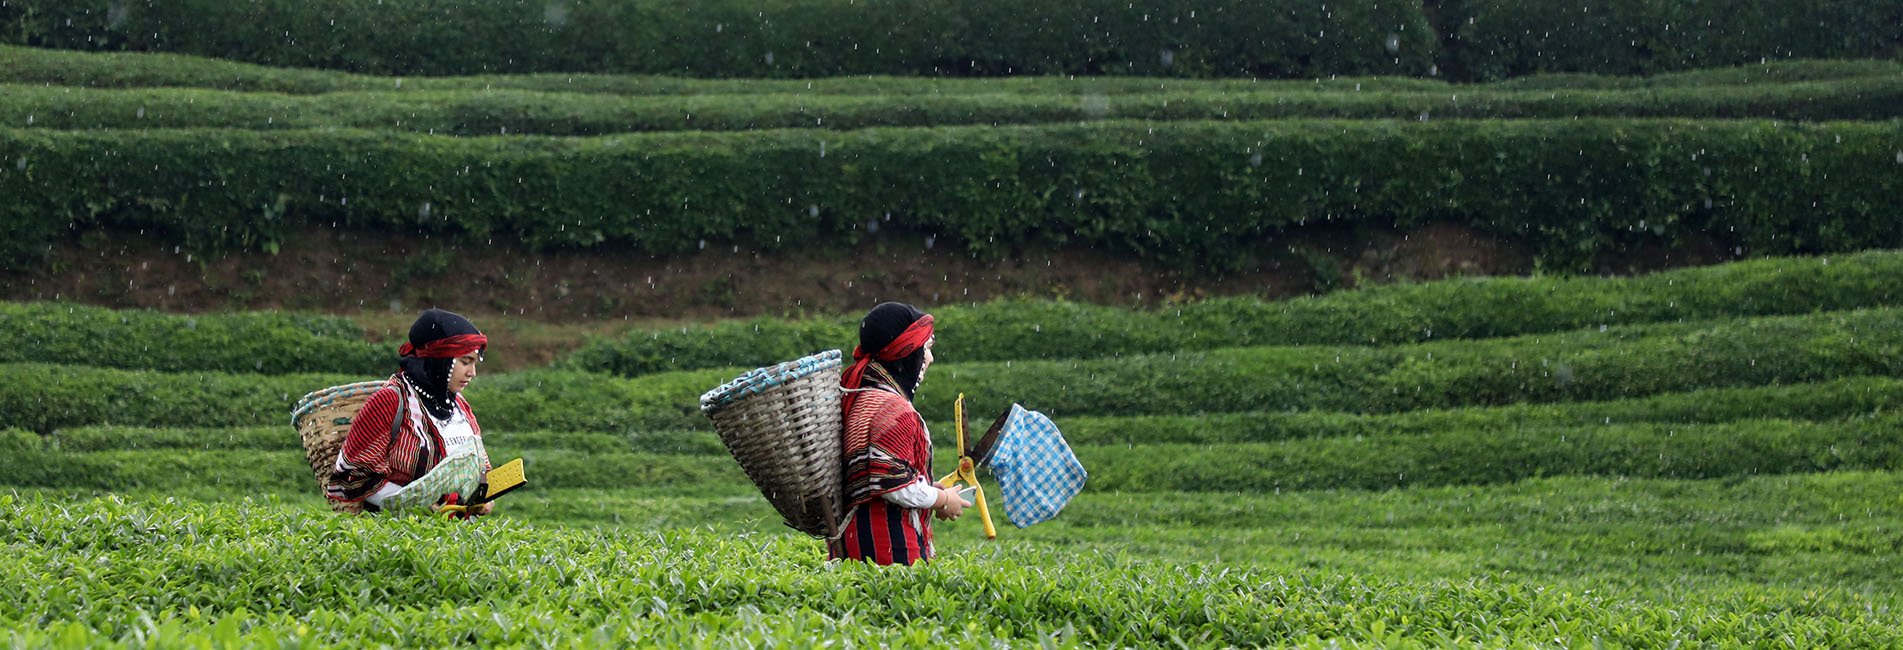 Rize'de Örnek Çay Bahçeleri Turizme Katkı Sağlıyor